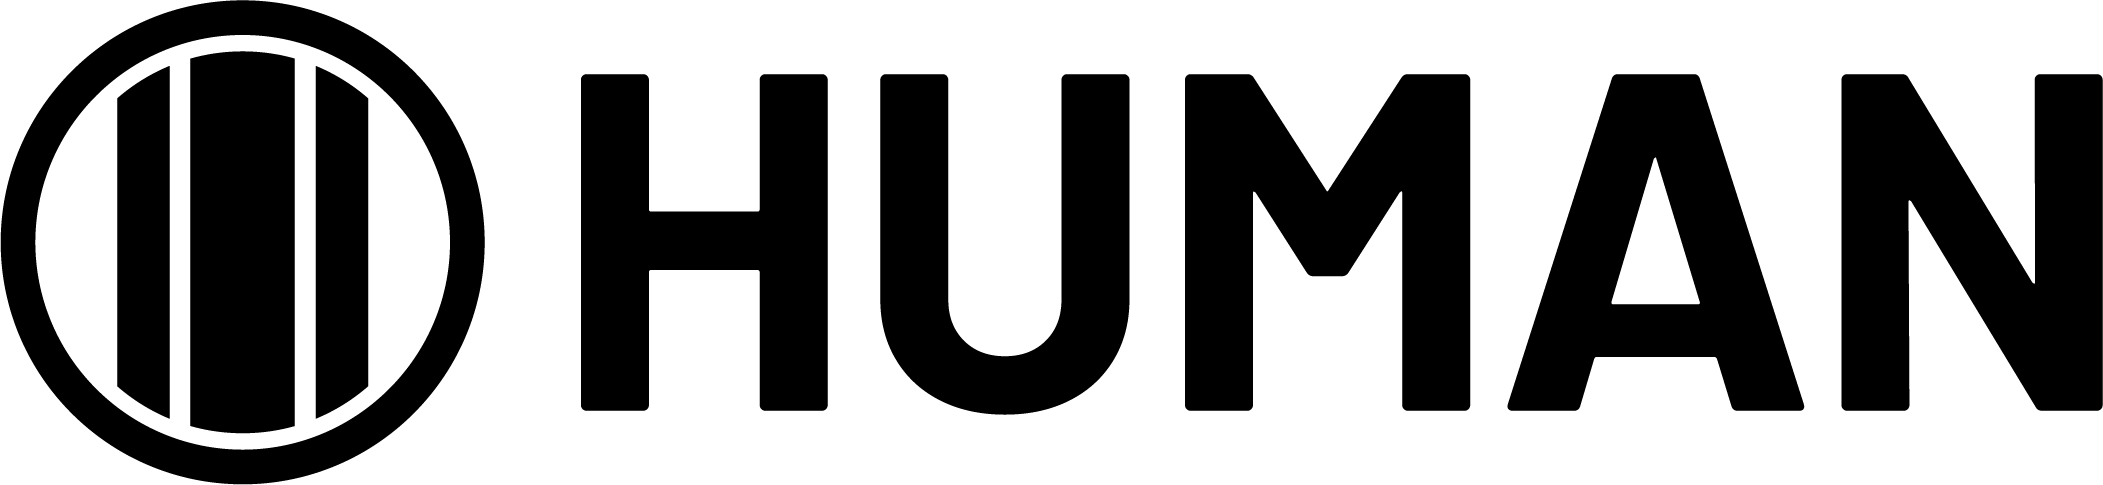 Human Logo